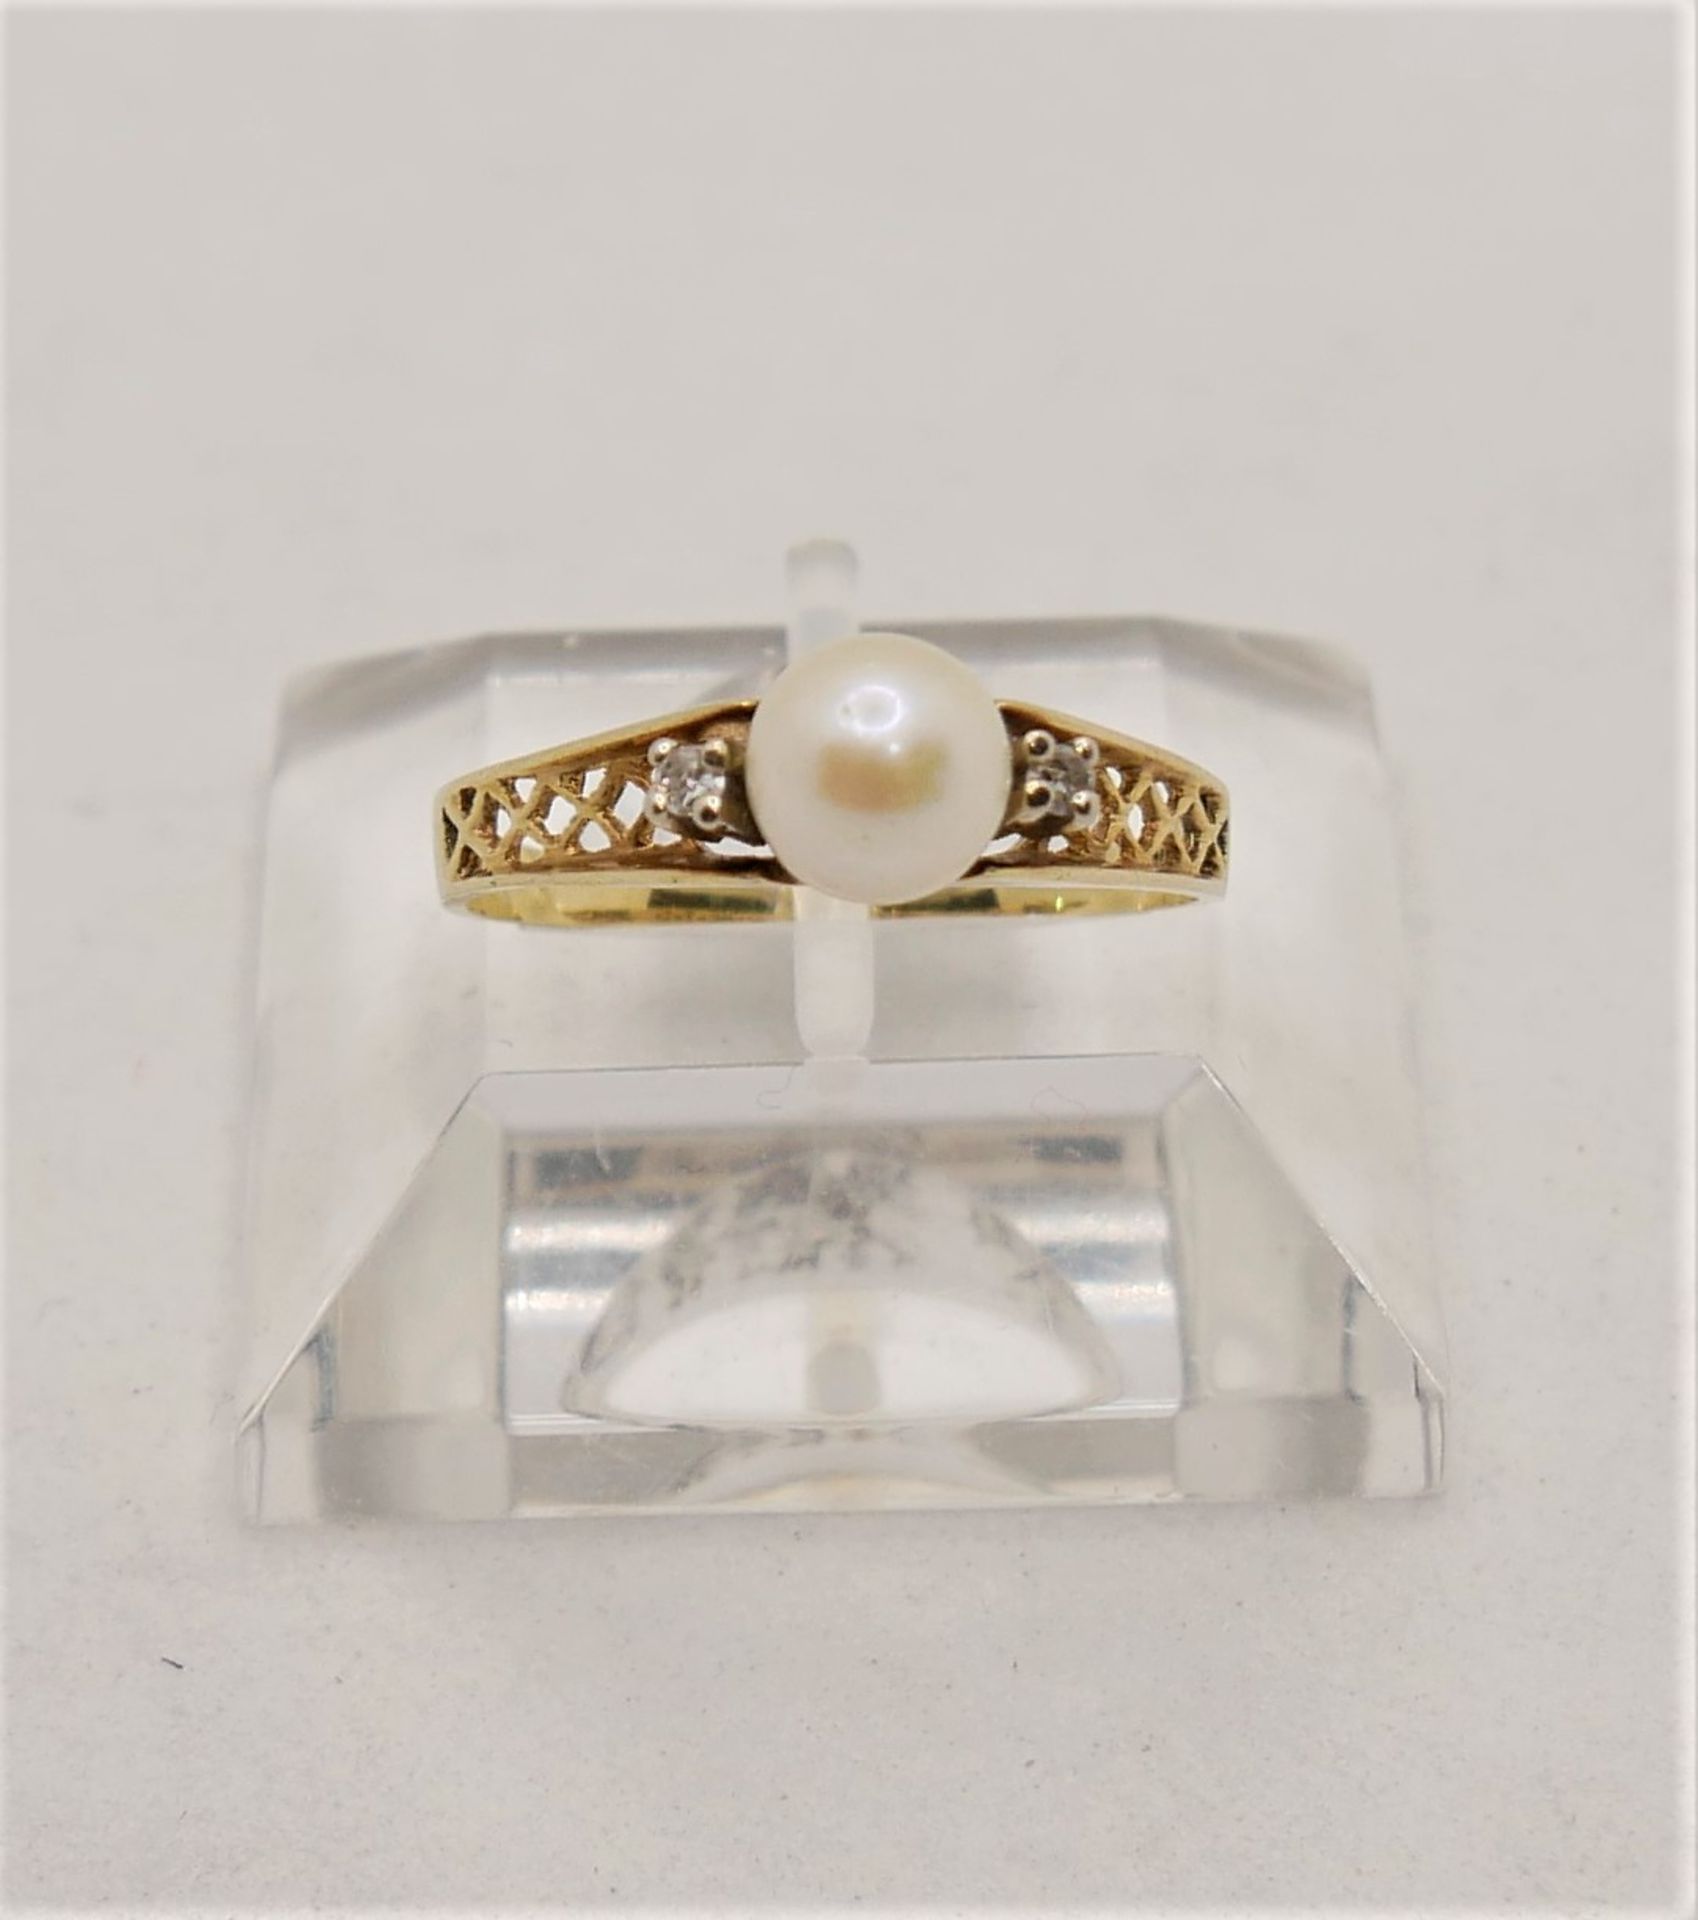 Damenring, 585er Gelbgold, besetzt mit einer Perle sowie 2 Brillianten. Ringgröße 60,5